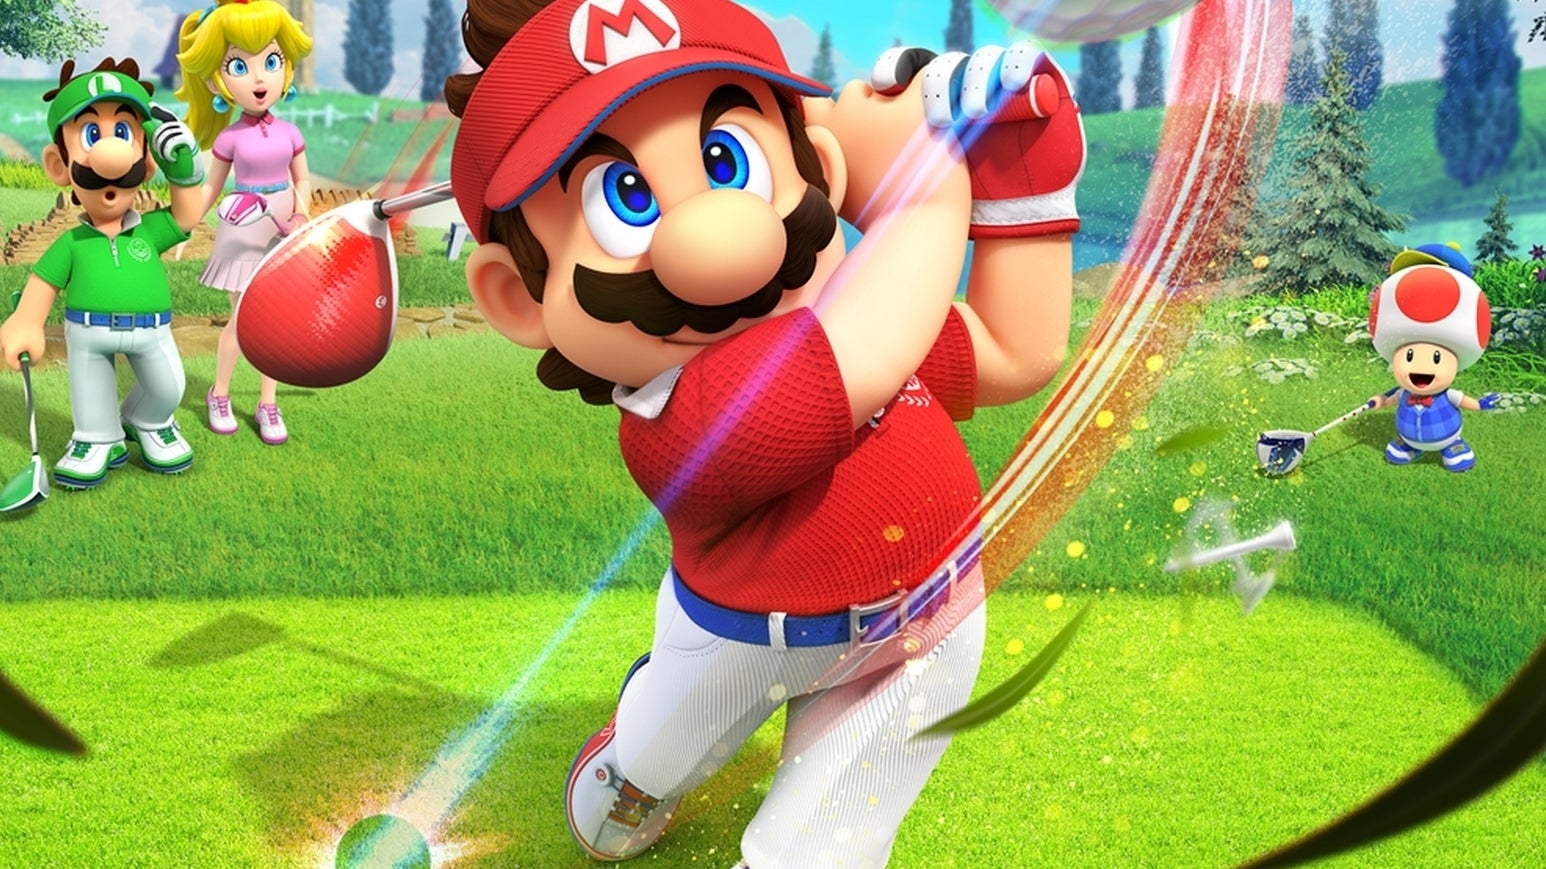 Immagine di Mario Golf: Super Rush in un trailer che mostra modalità di gioco, personaggi e molto altro